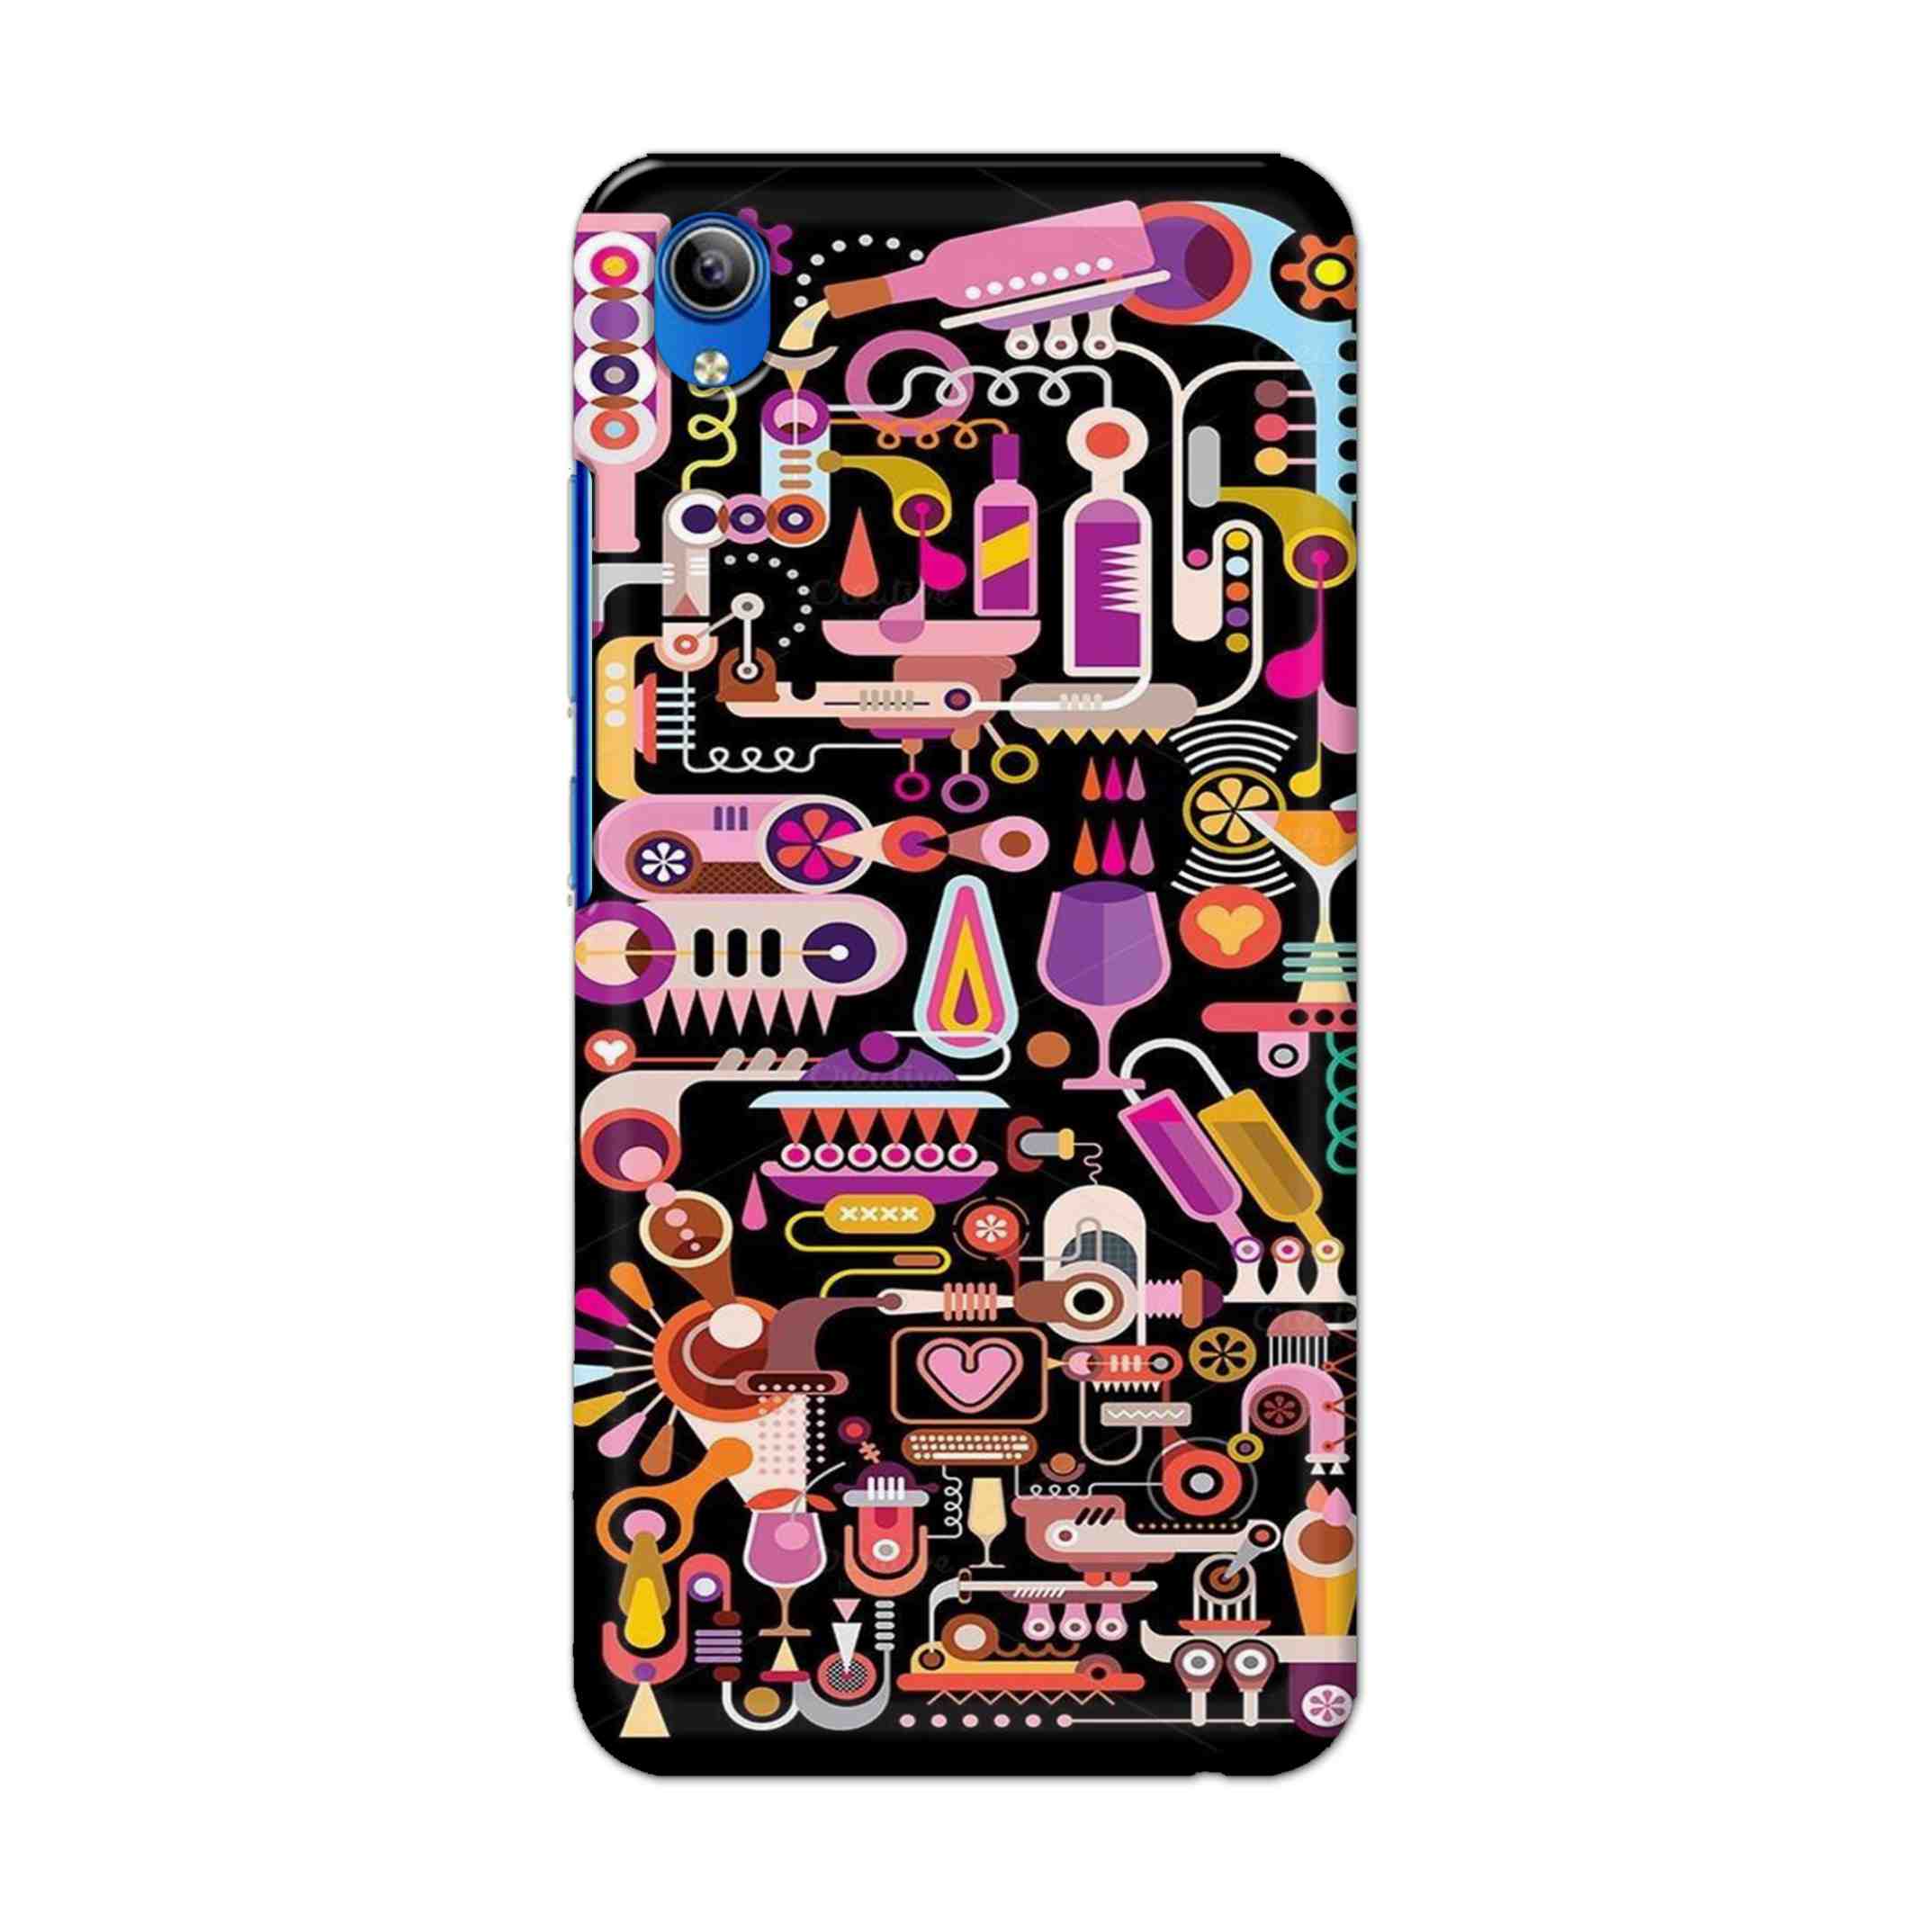 Buy Lab Art Hard Back Mobile Phone Case Cover For Vivo Y91i Online